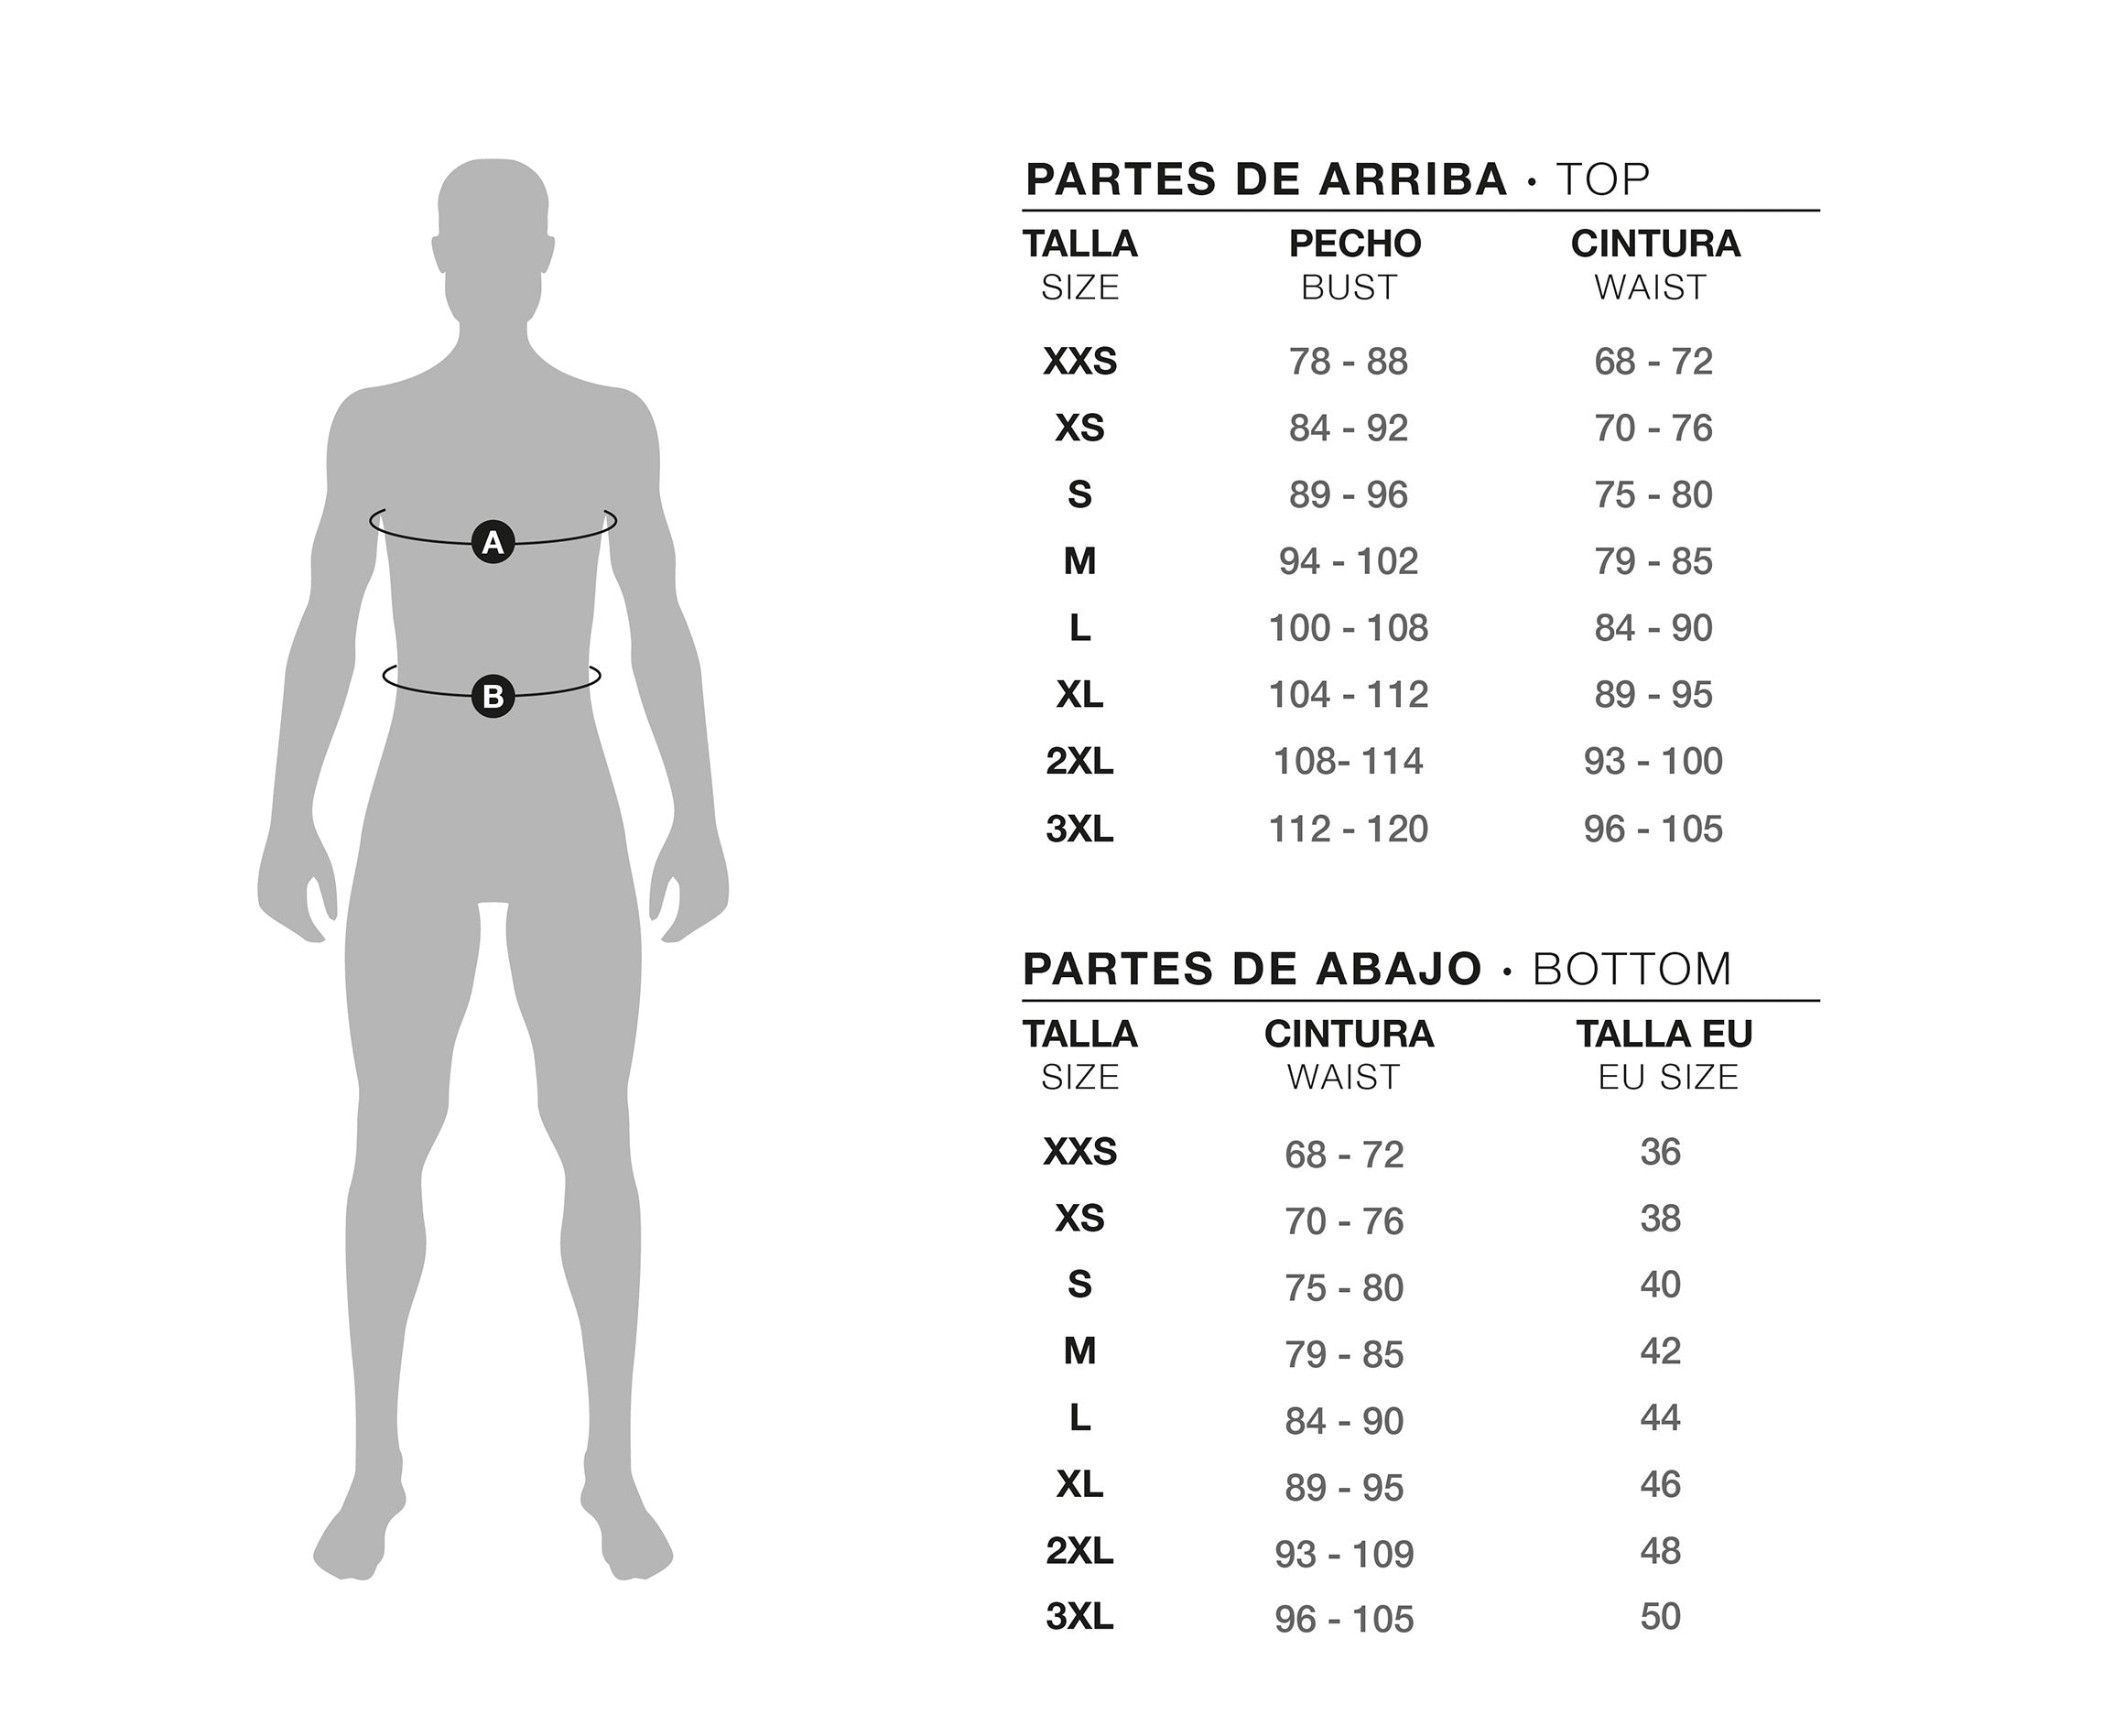 Guía de tallas para pantalón y camisa de hombre